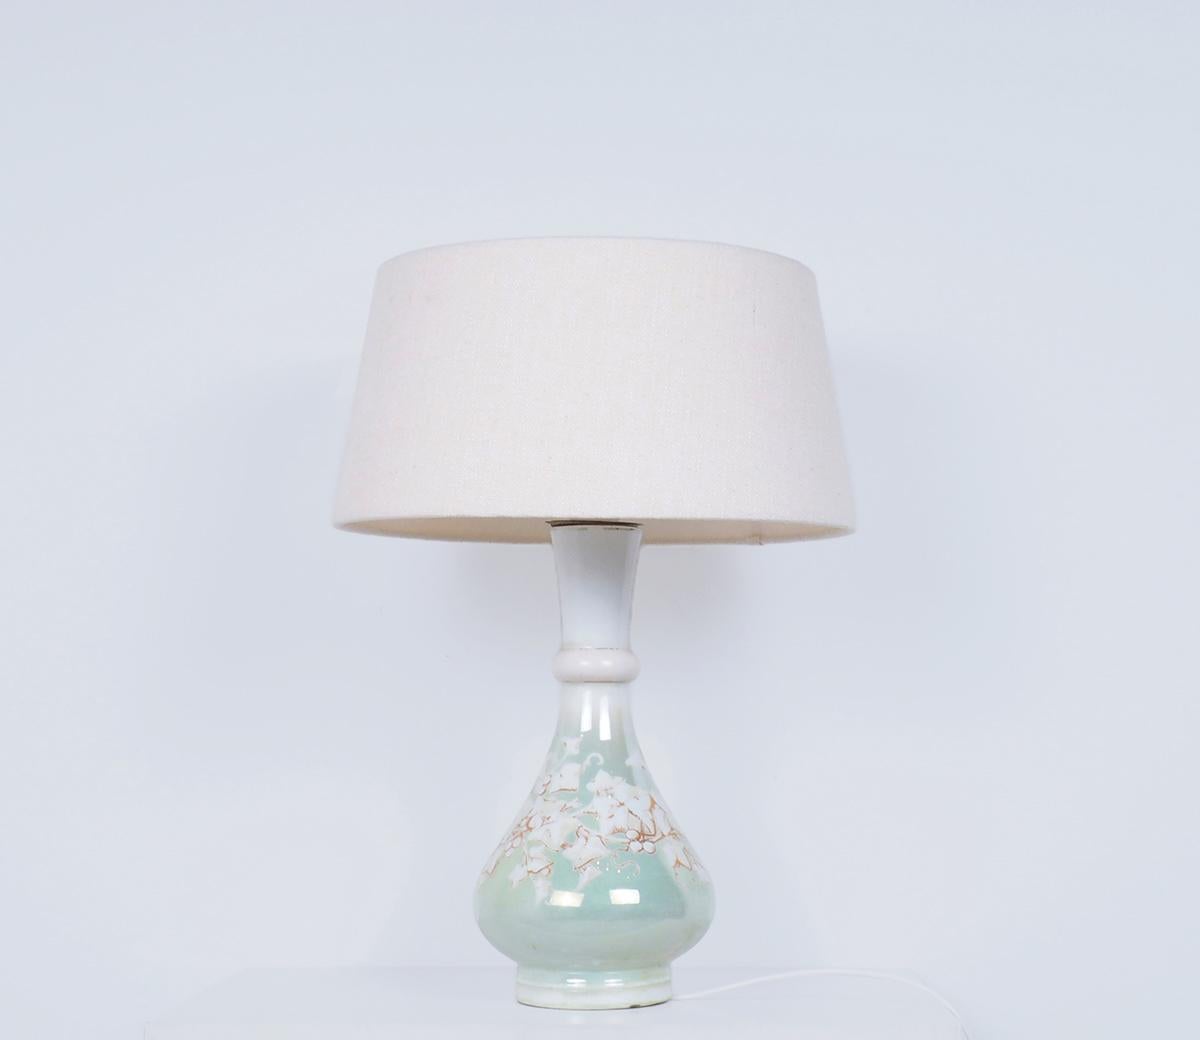 Schöne antike französische elegante Porzellan-Tischlampe von G.B. Breveté in Paris, Zeit und Stil der Belle Époque.

Die Lampe ist handbemalt und hat ein Dekor aus Traubenblättern

mit goldenen Akzenten auf einem leuchtend lindgrünen